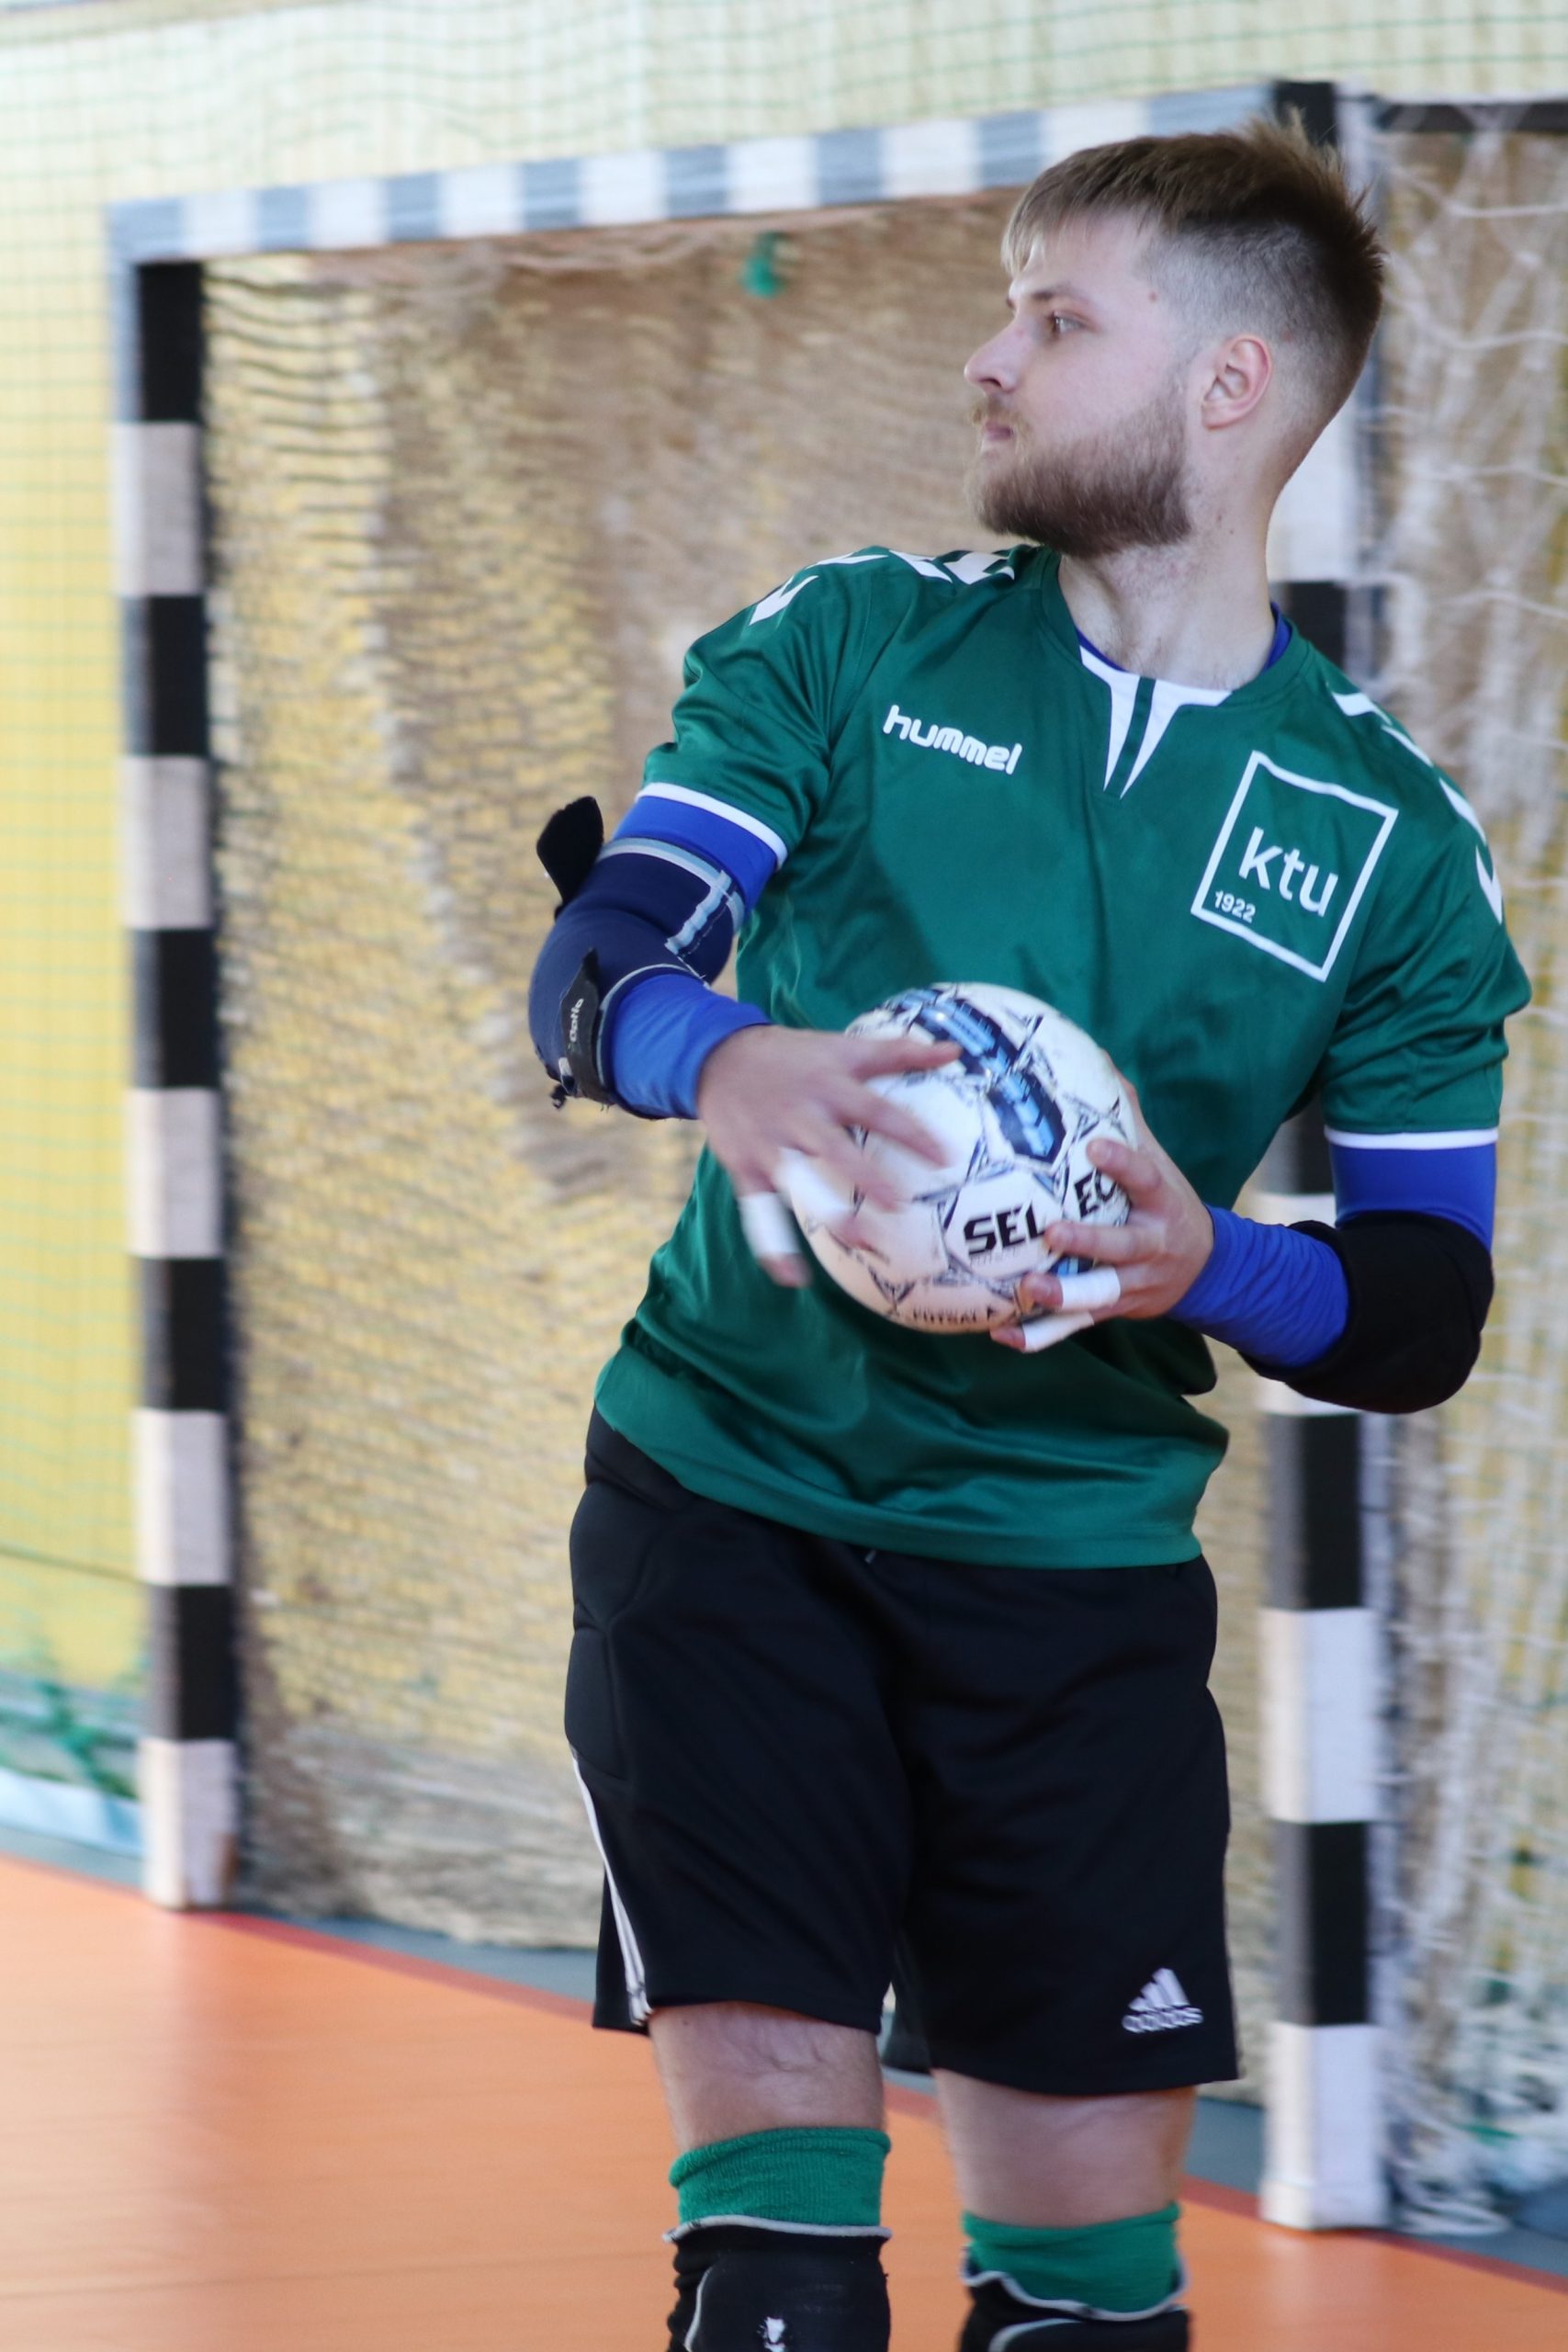 Studentas žaliais marškinėliais su KTU logotipu rankose laiko futbolo kamuolį